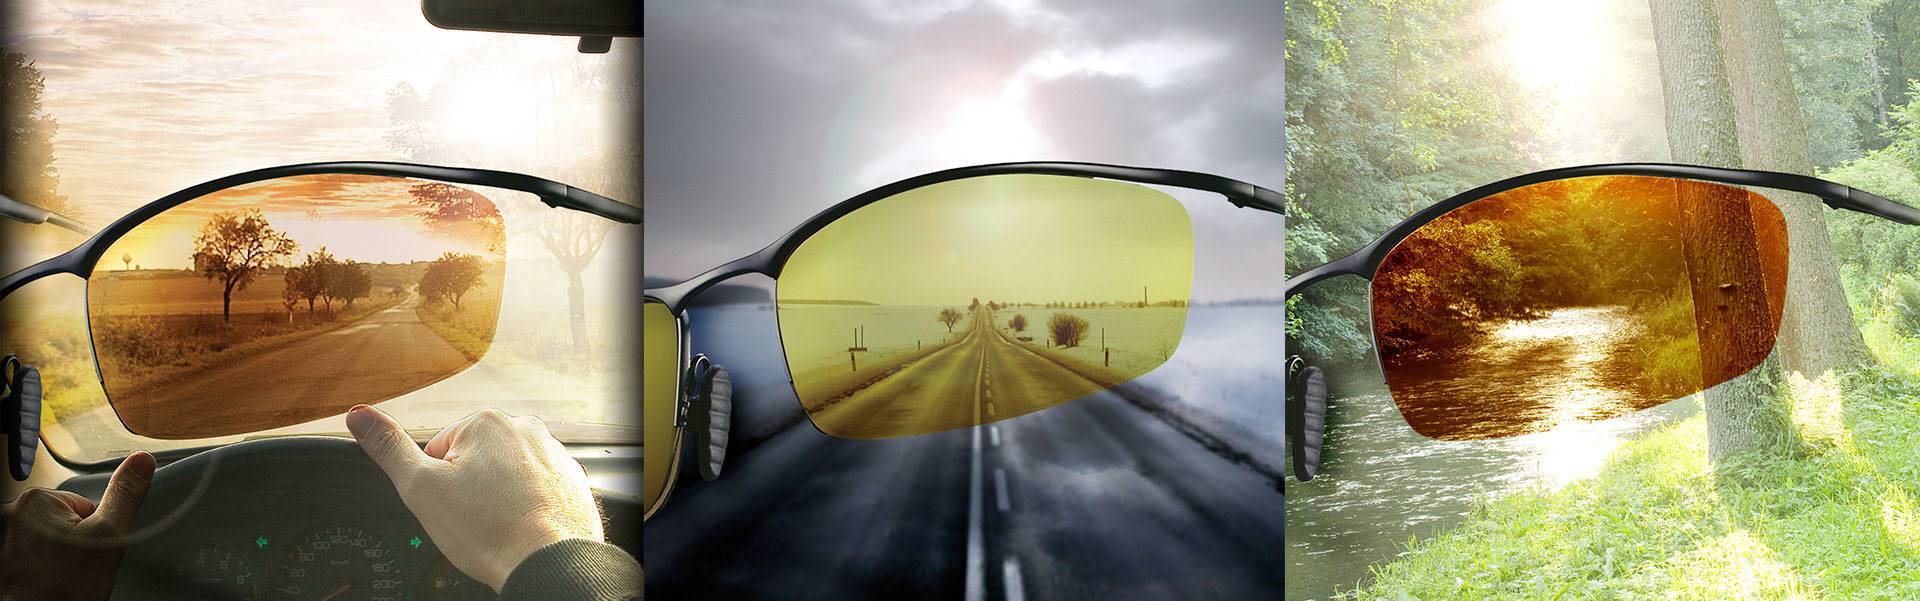 Какие поляризационные очки выбрать для вождения?